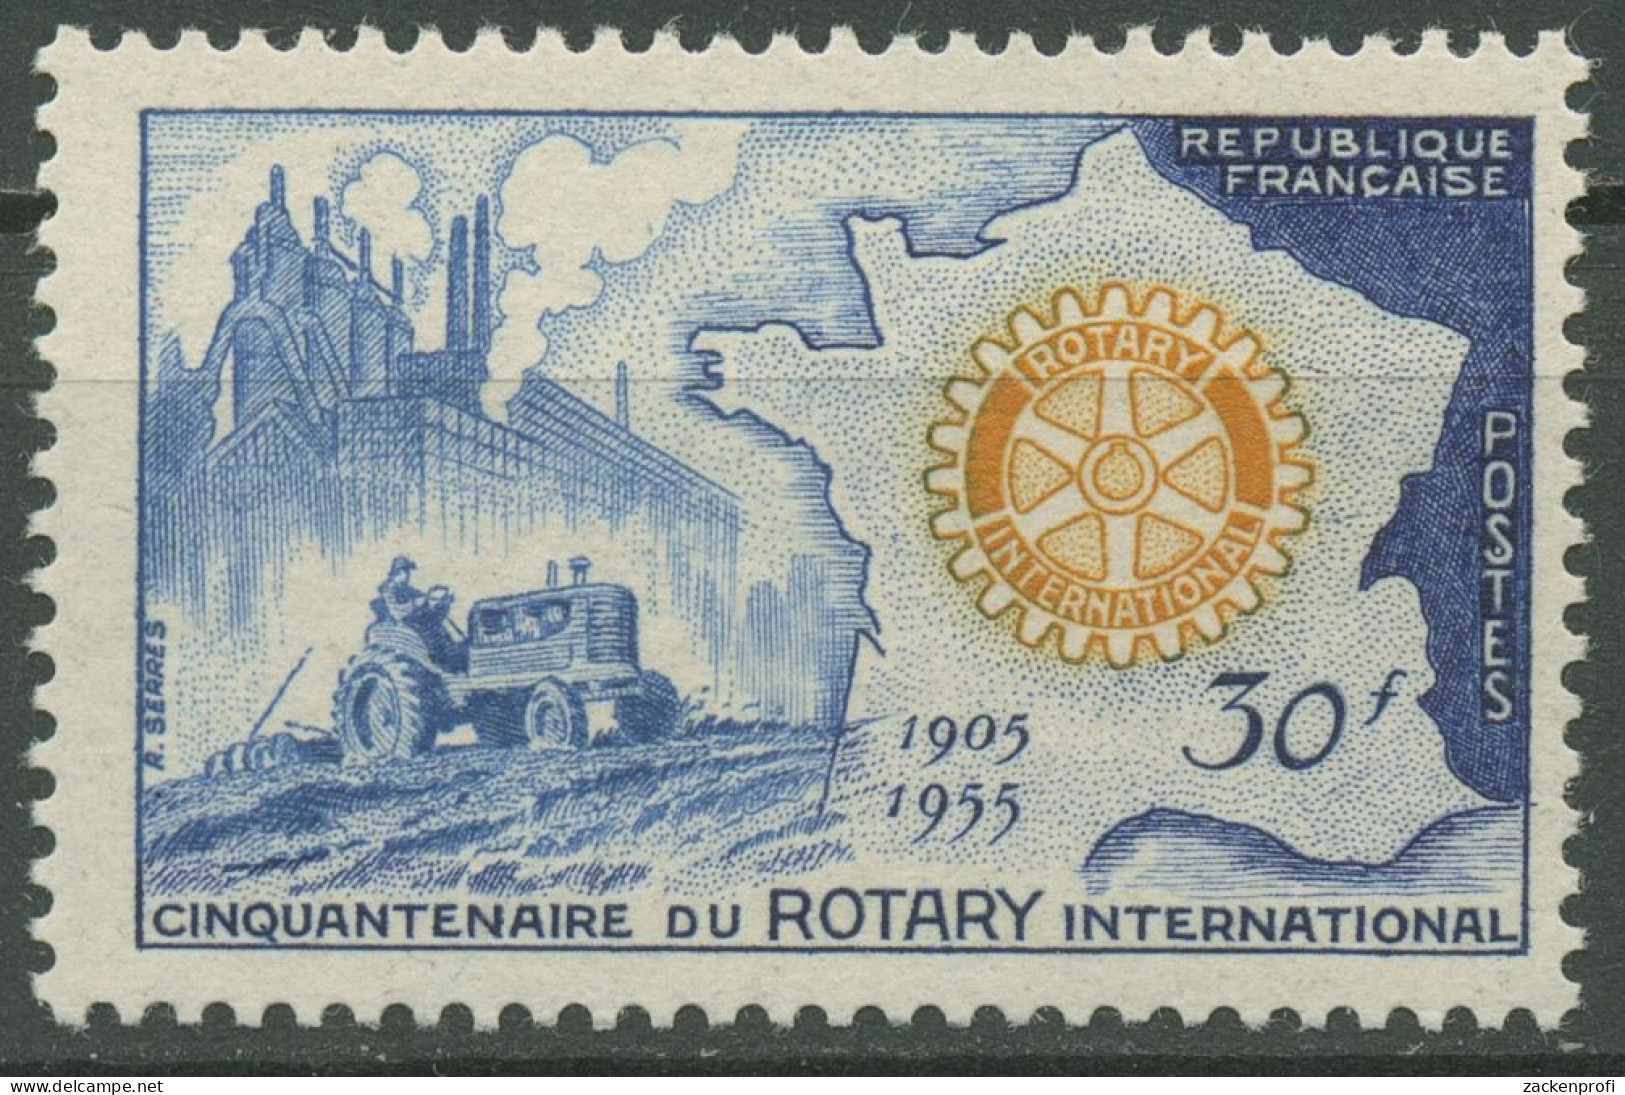 Frankreich 1955 Rotary International Traktor Landkarte 1035 Postfrisch - Nuovi